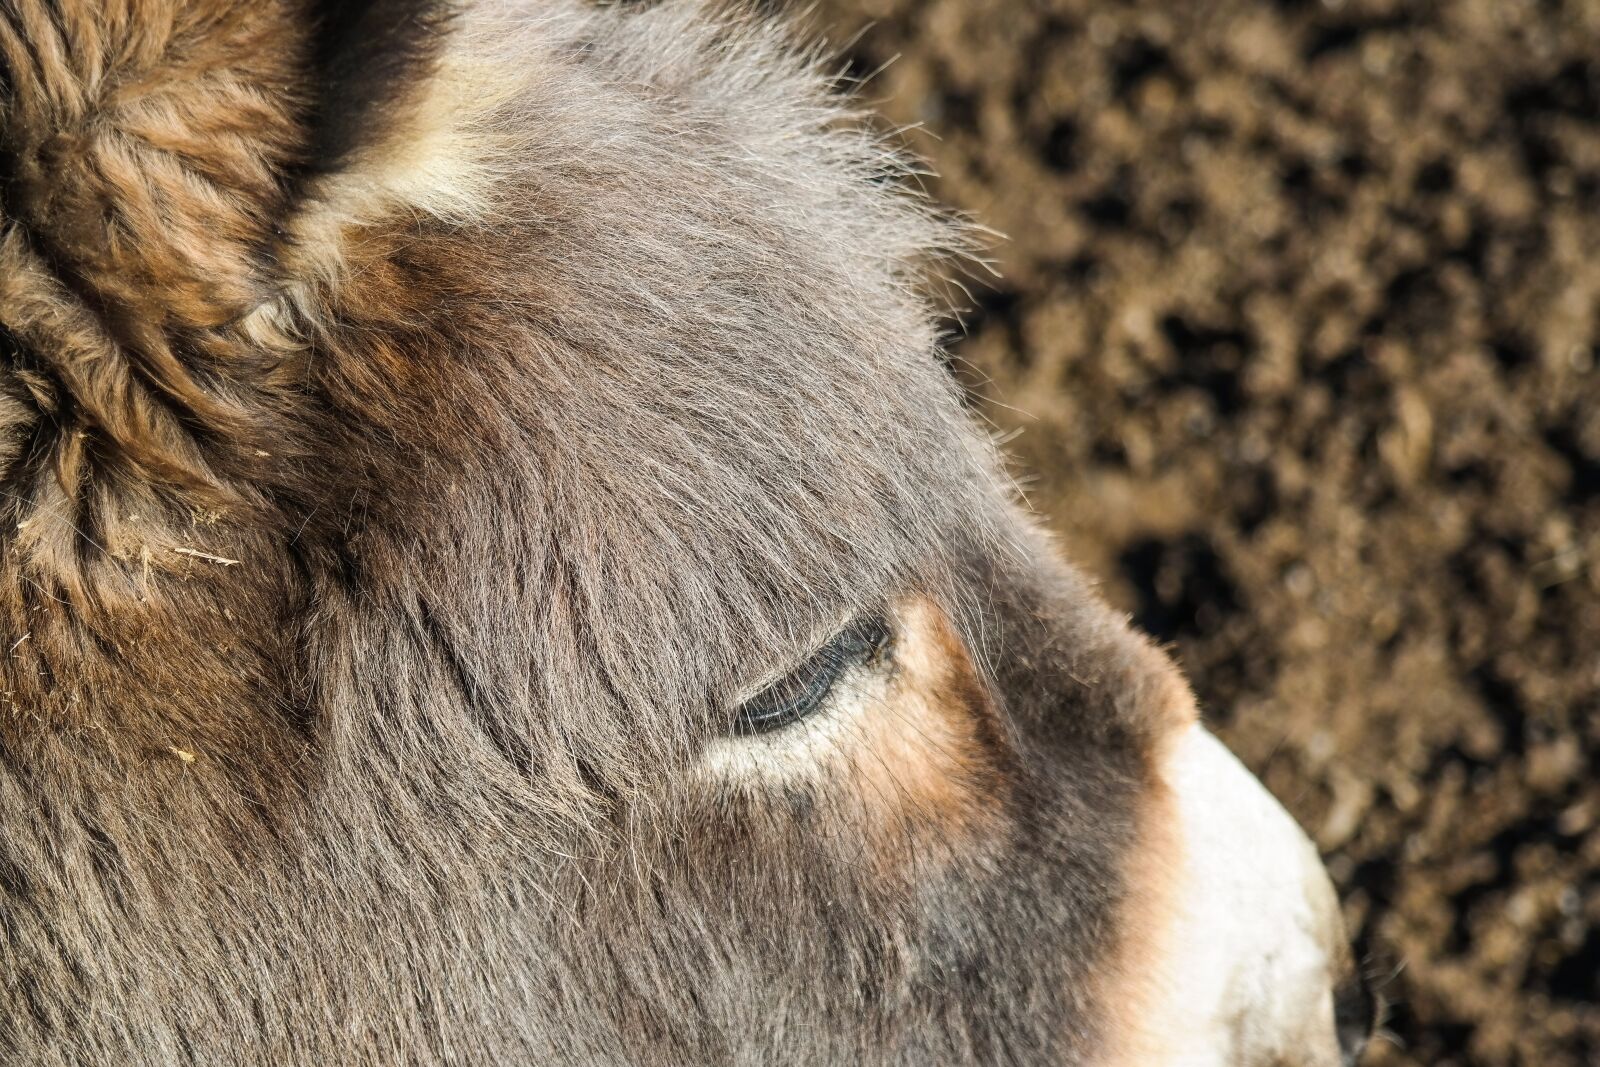 Samsung NX300 sample photo. Donkey, animal, ungulate photography